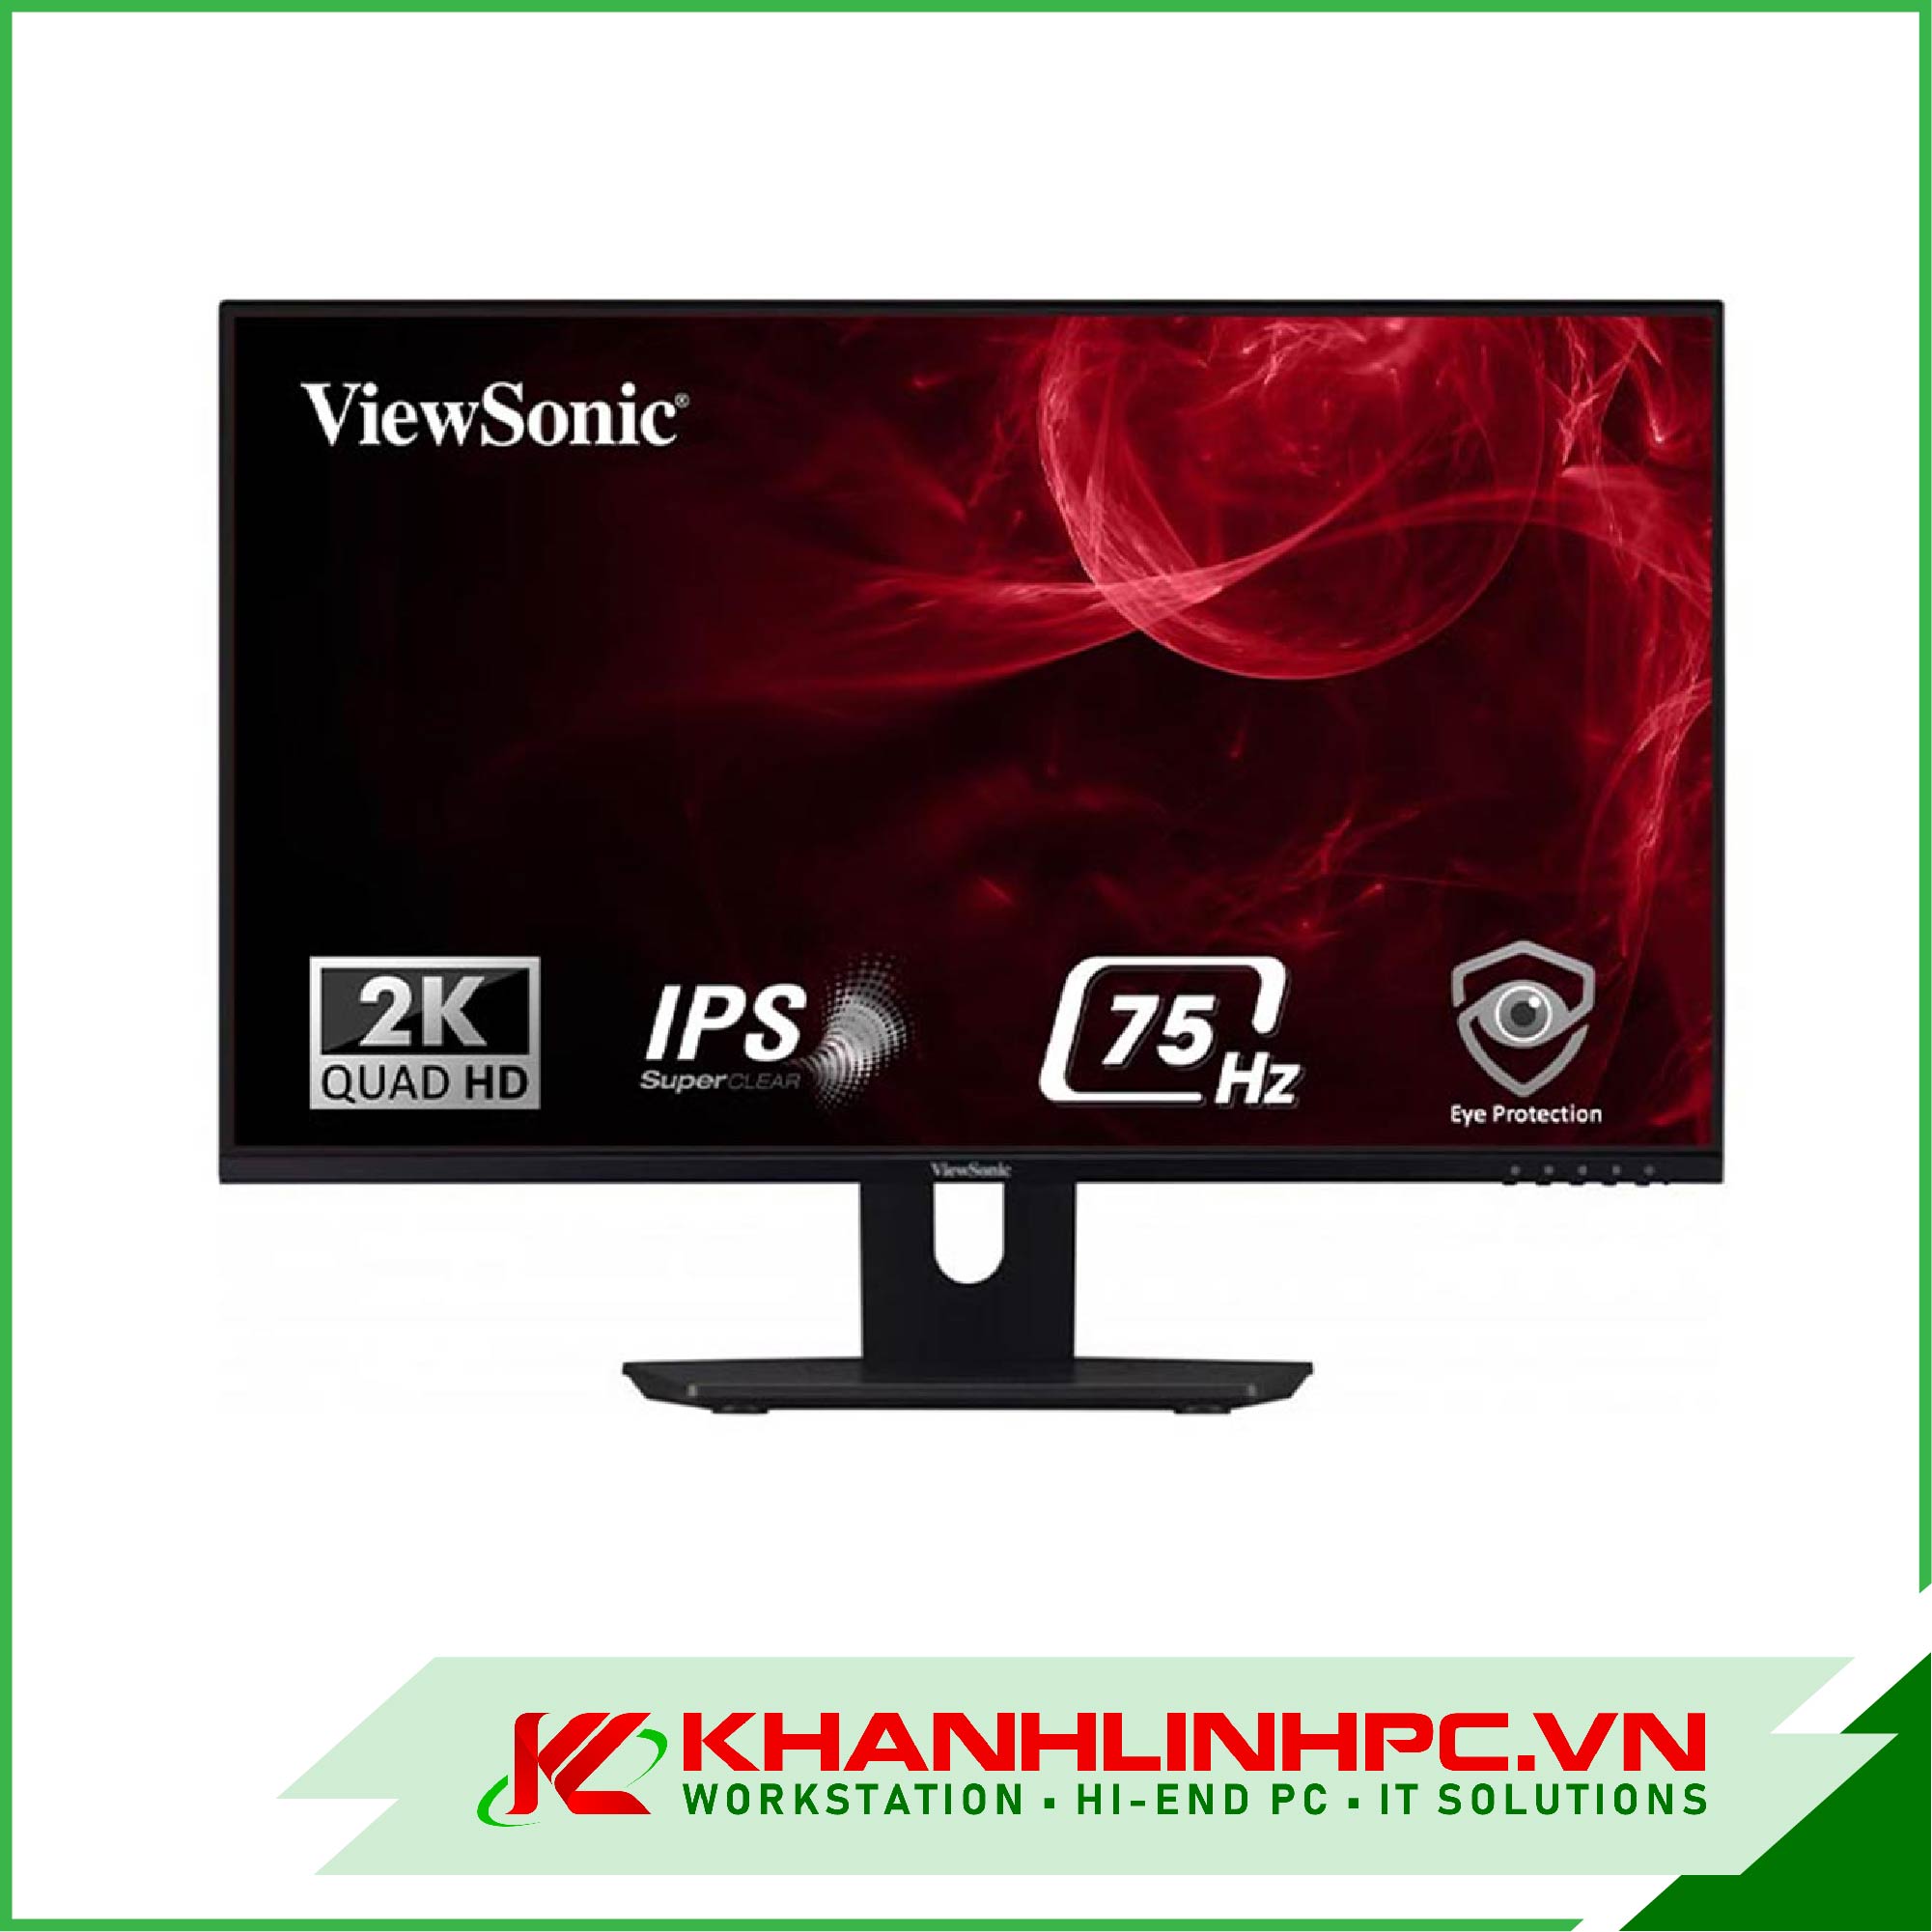 Màn Hình ViewSonic VX2480 - 2K - SHD (24